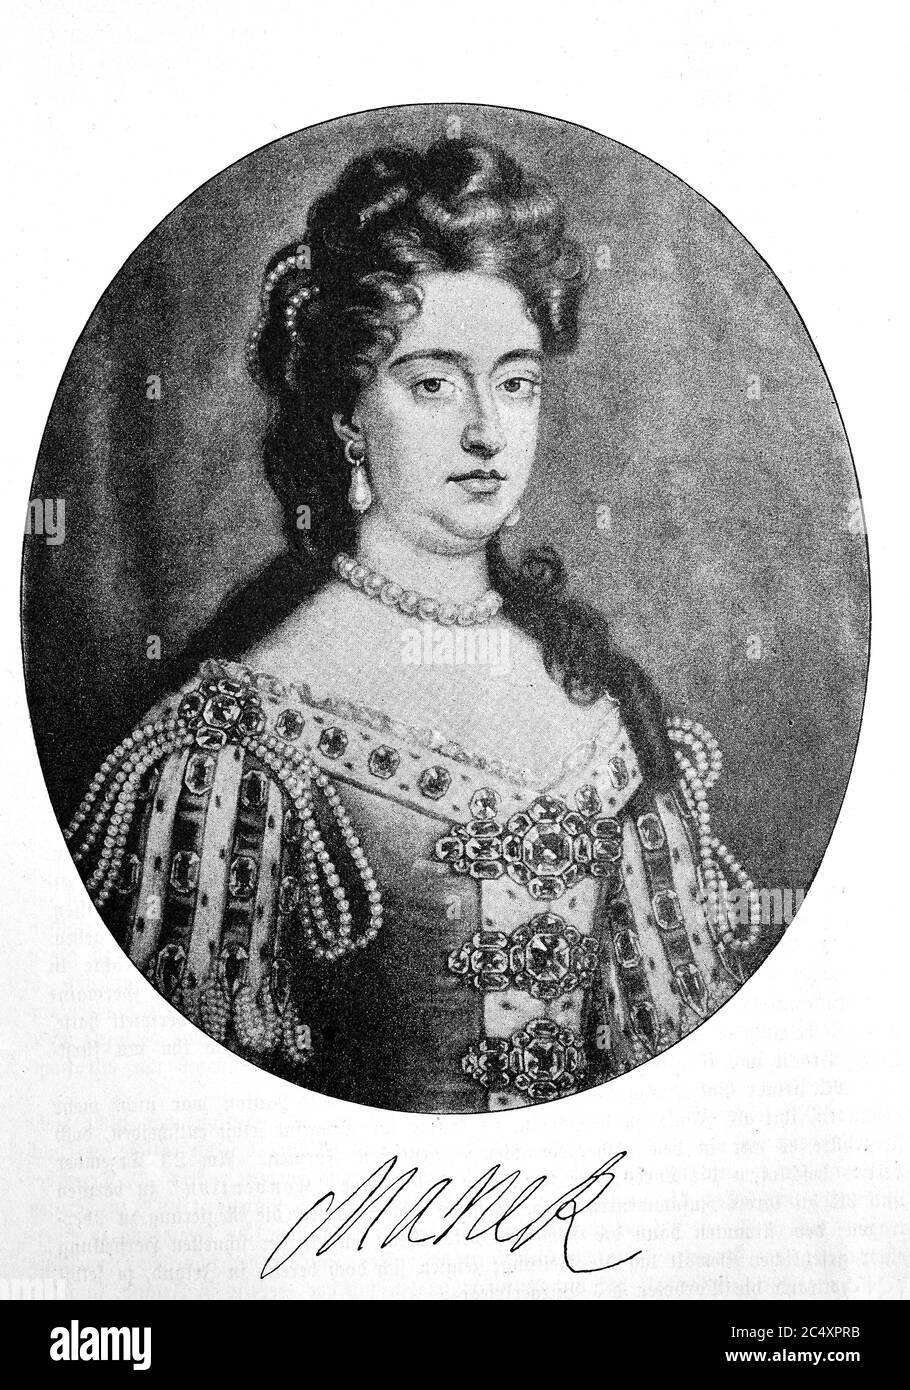 '. Maria II., Englisch Maria II. (* 30. April 1662 † 28. Dezember 1694) war Königin von England, Schottland und Irland / Maria II., englisch Maria II. (* 30. April 1662; † 28. Dezember 1694), war Koenigin von England, Schottland und Irland' Stockfoto